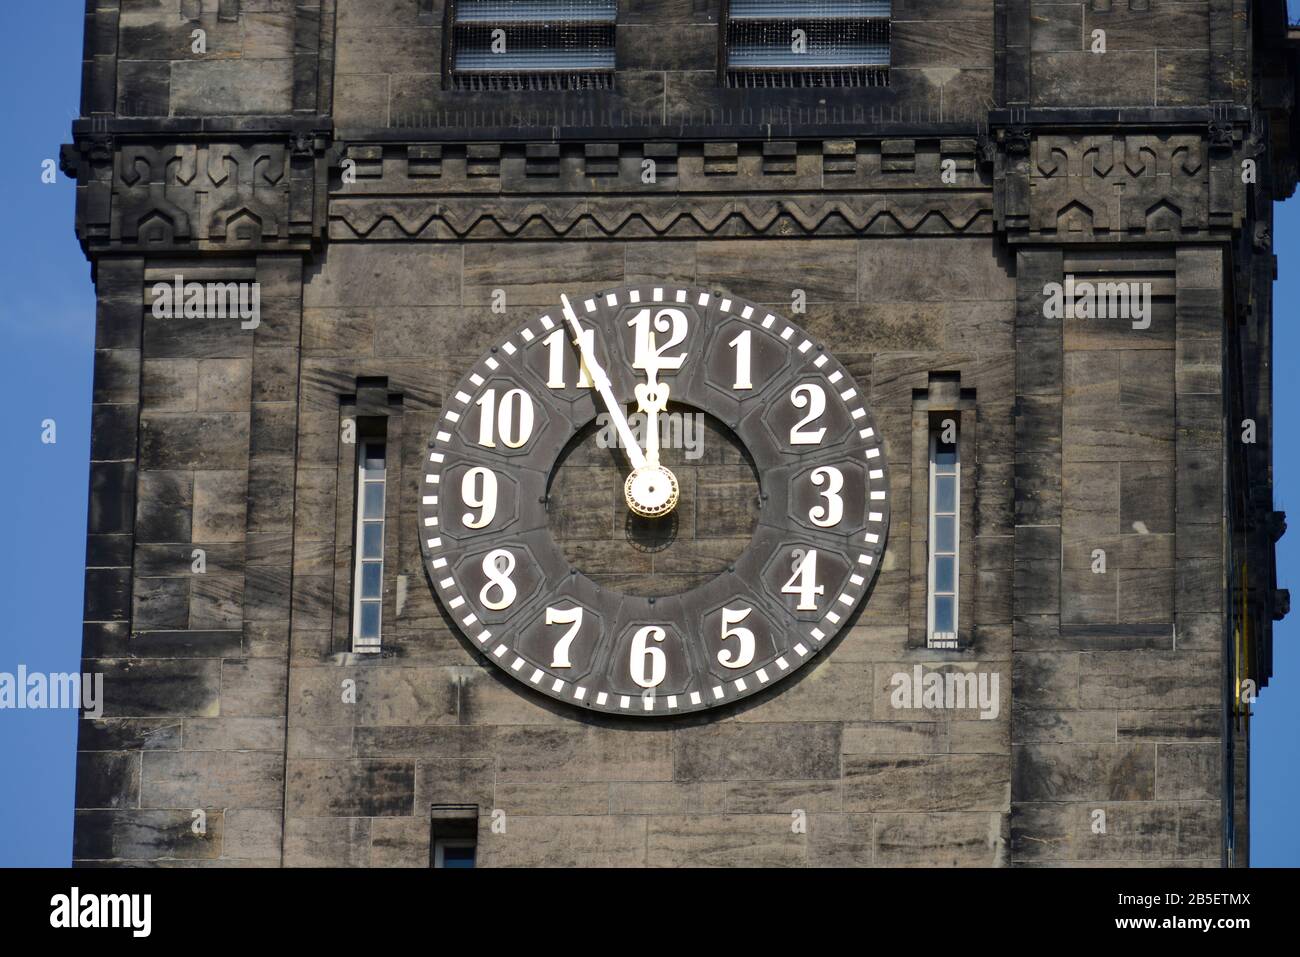 Uhr, Neues Rathaus, Markt, Chemnitz, Sachsen, Deutschland Stock Photo